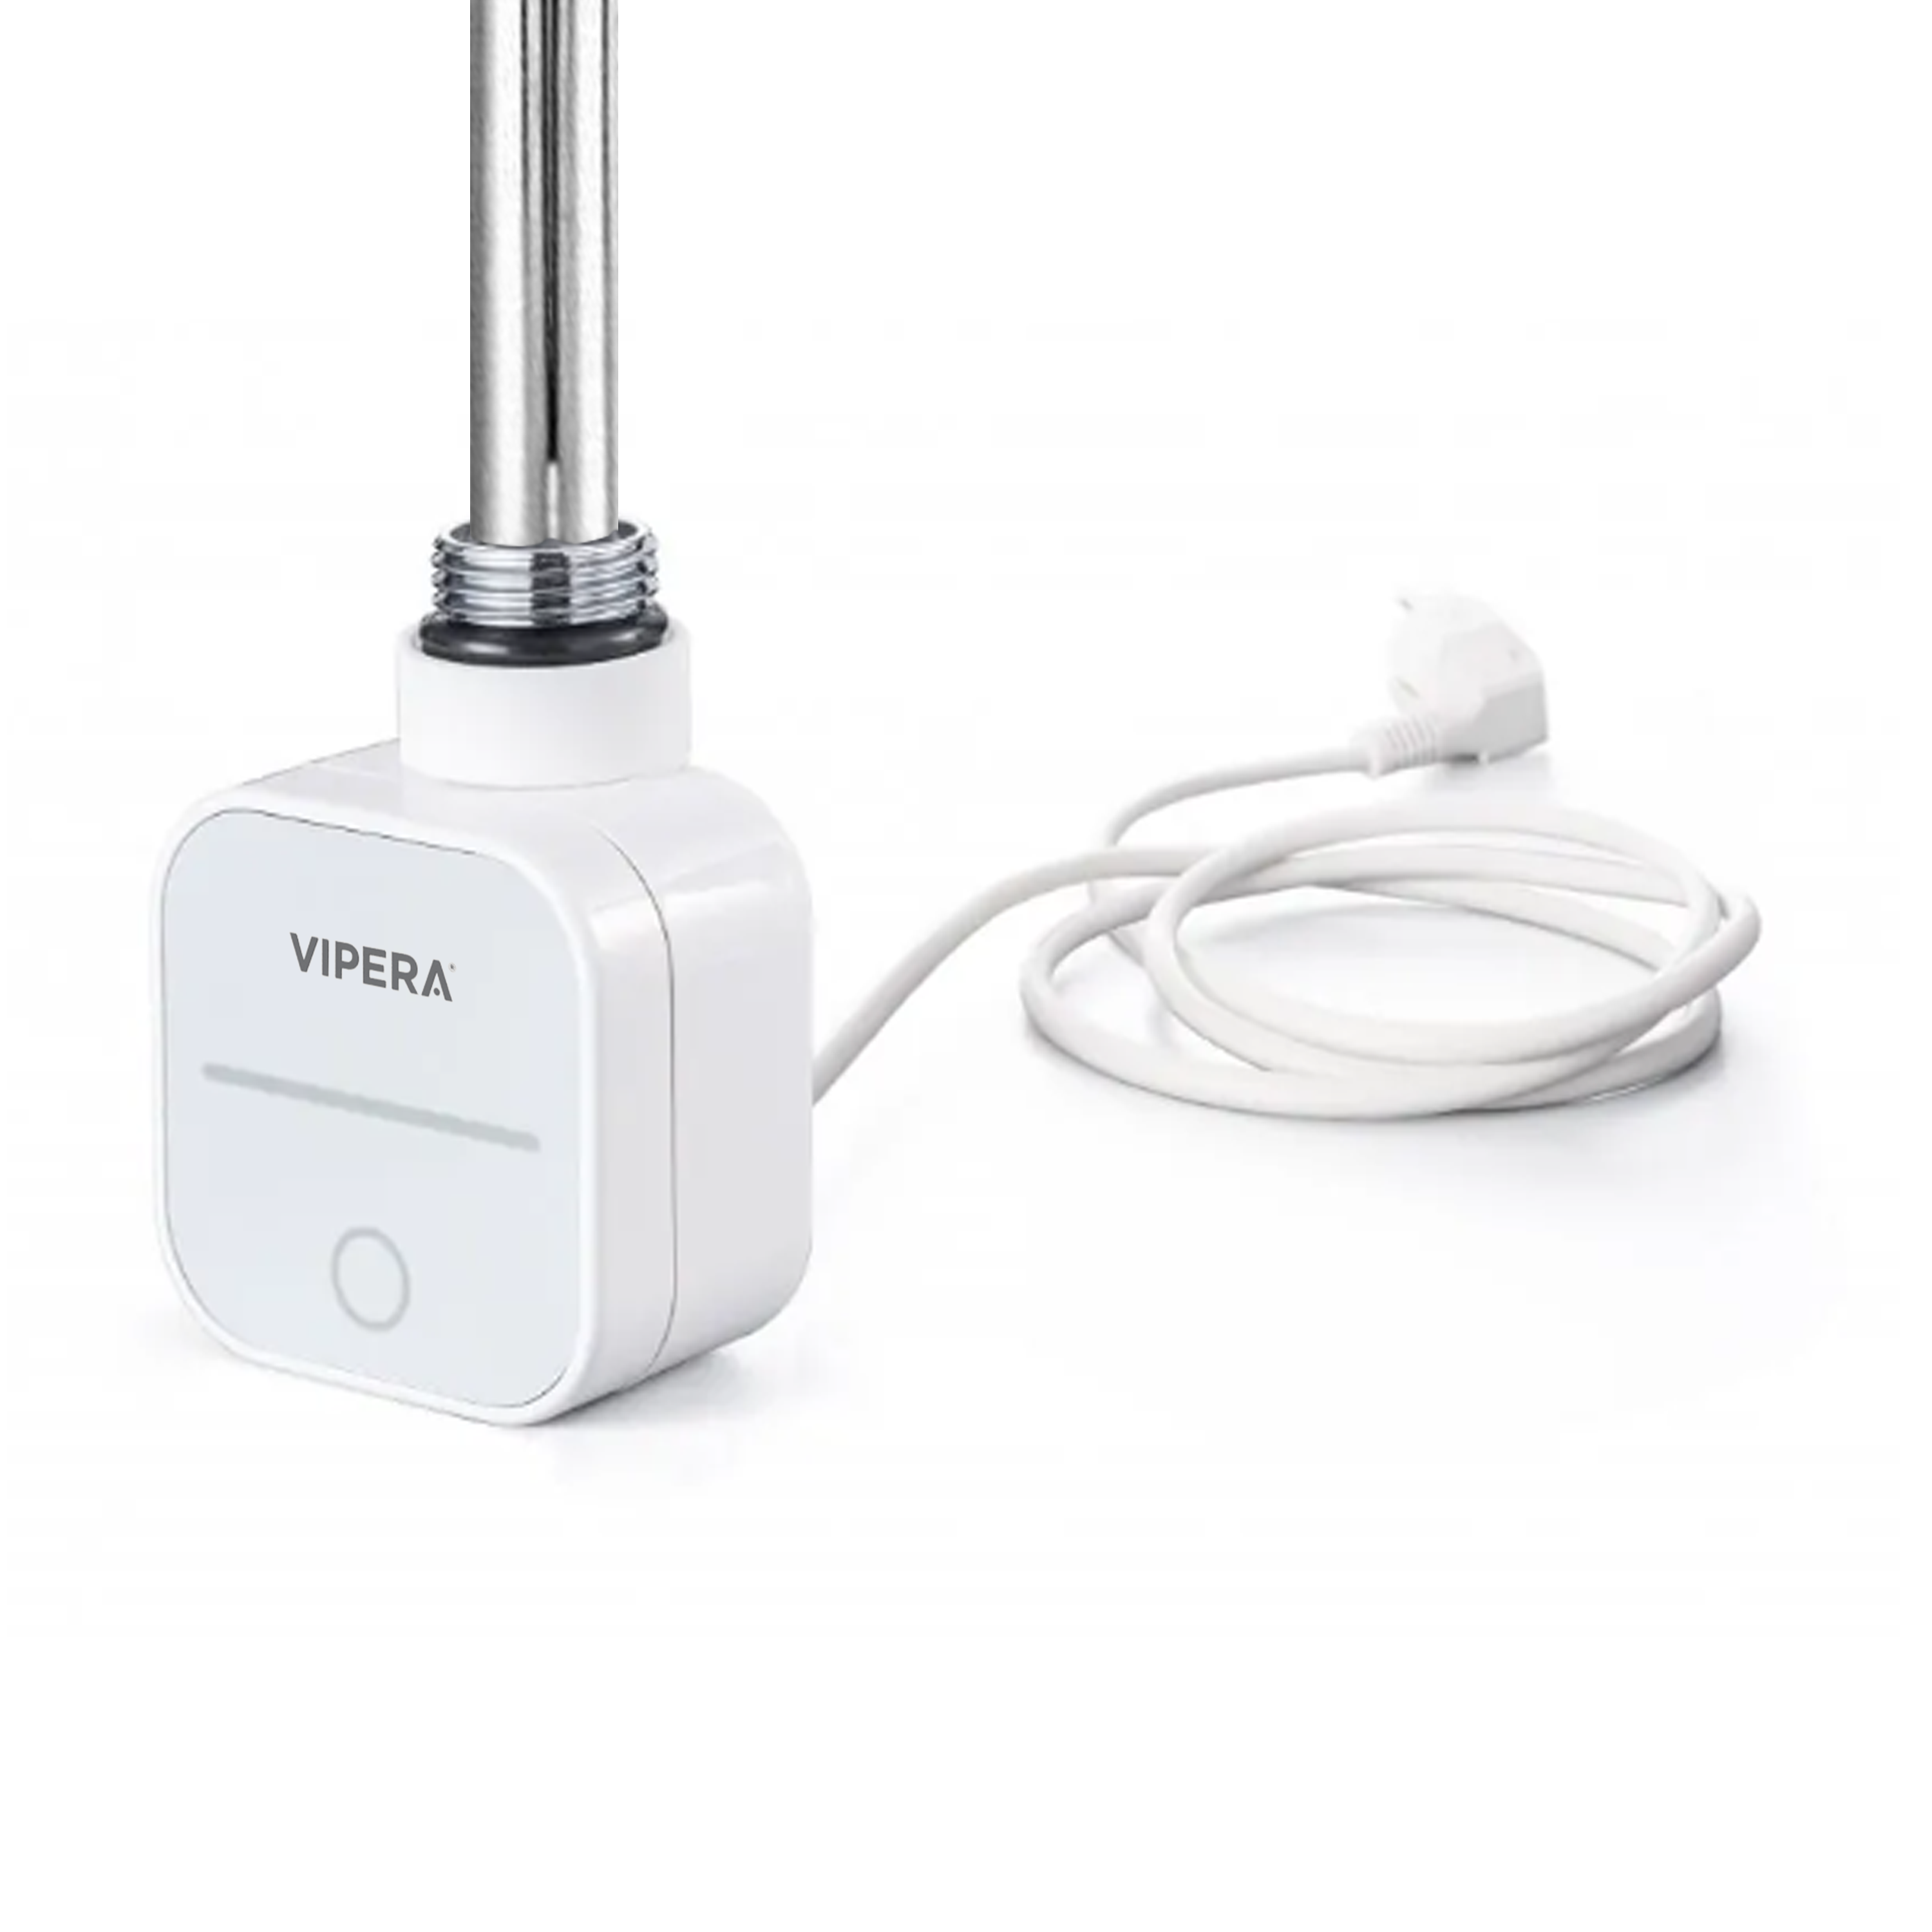 Vipera radiator thermostaat voor elektrische handdoekradiator 1200W programmeerbaar wit